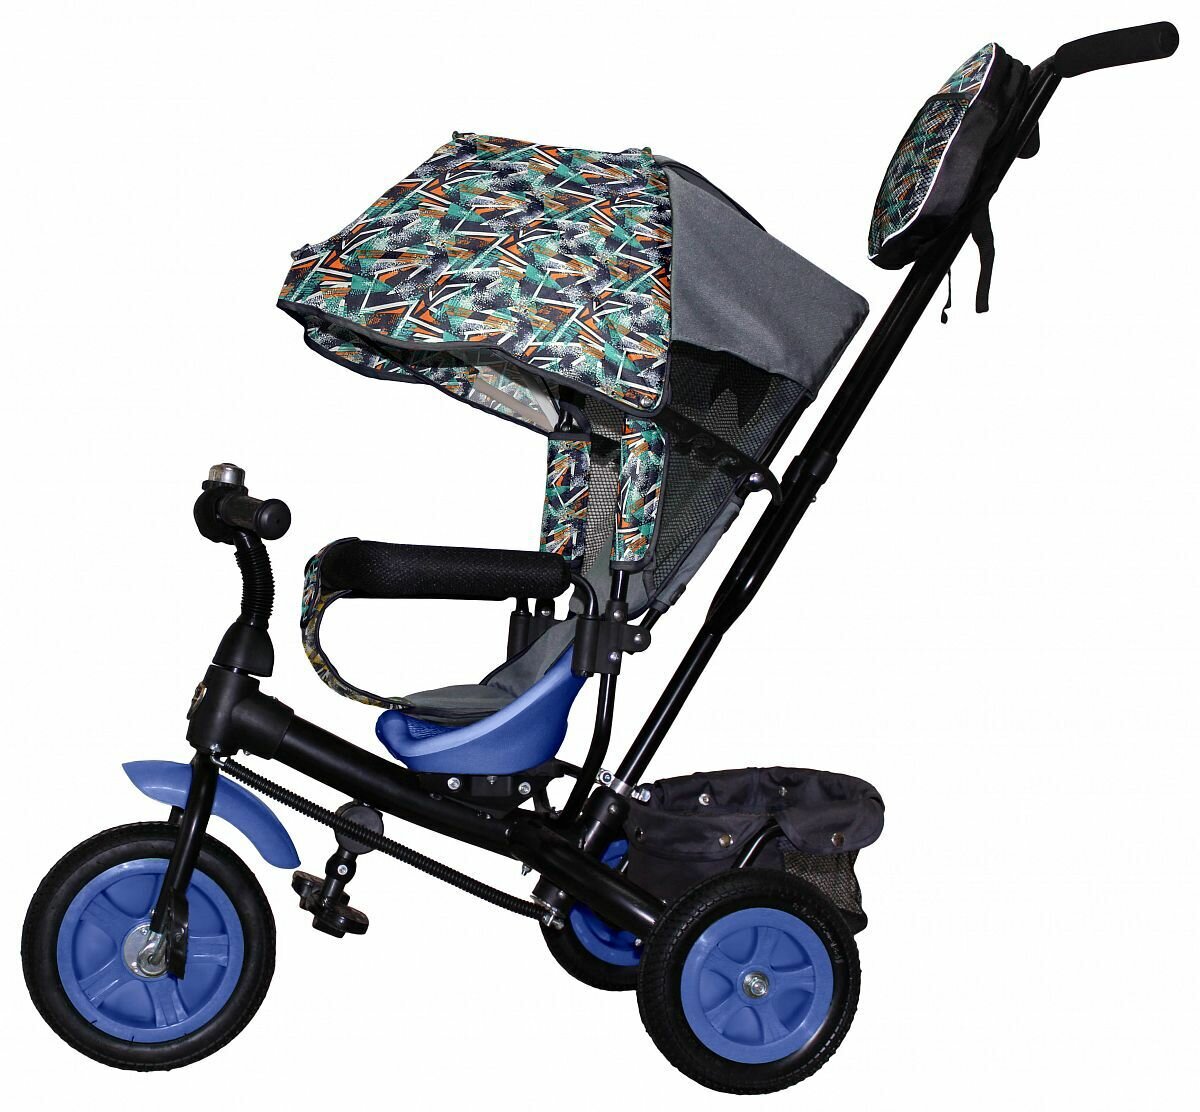 Велосипед трехколесный VIVAT 1 абстракция темно-синий/оранжевый, надувные колеса